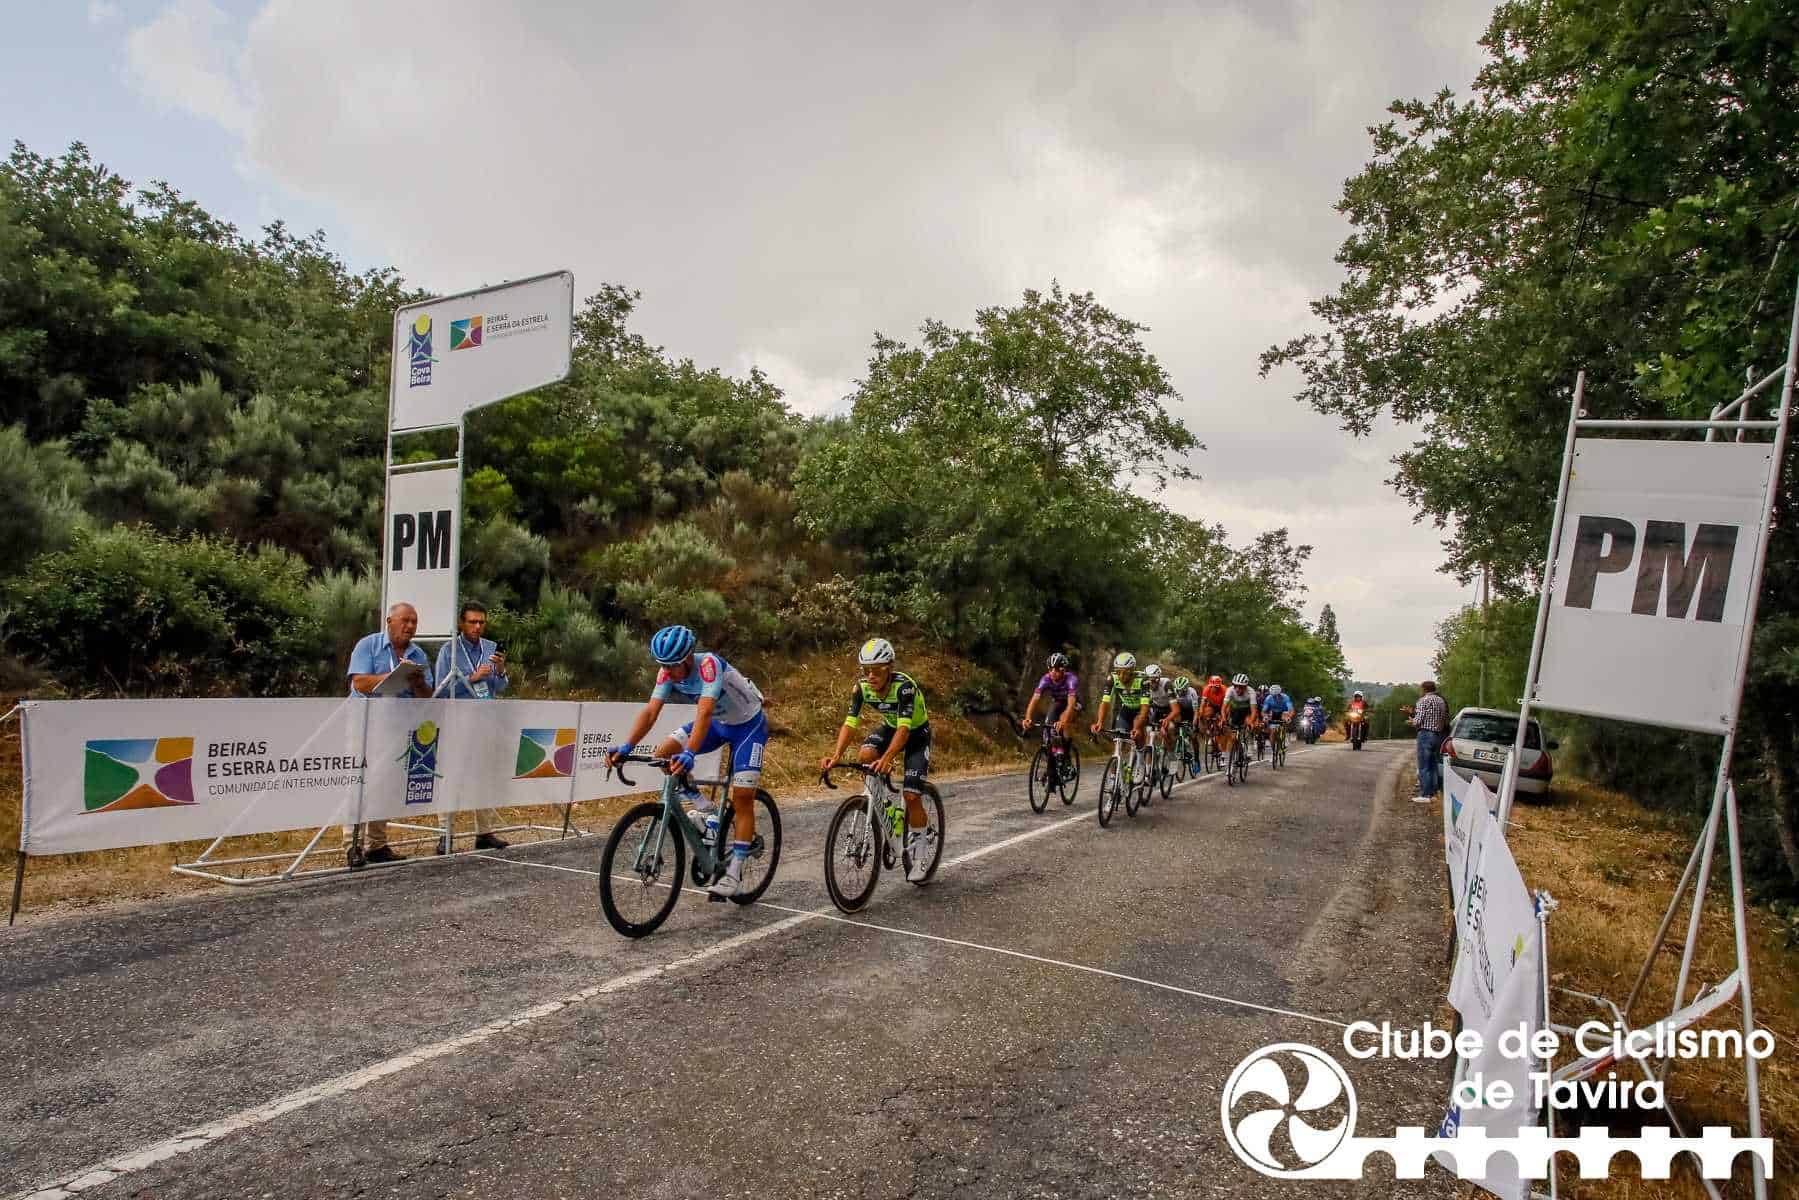 Clube de Ciclismo de Tavira - Grande Prémio Internacional Beiras e Serra da Estrela 202352